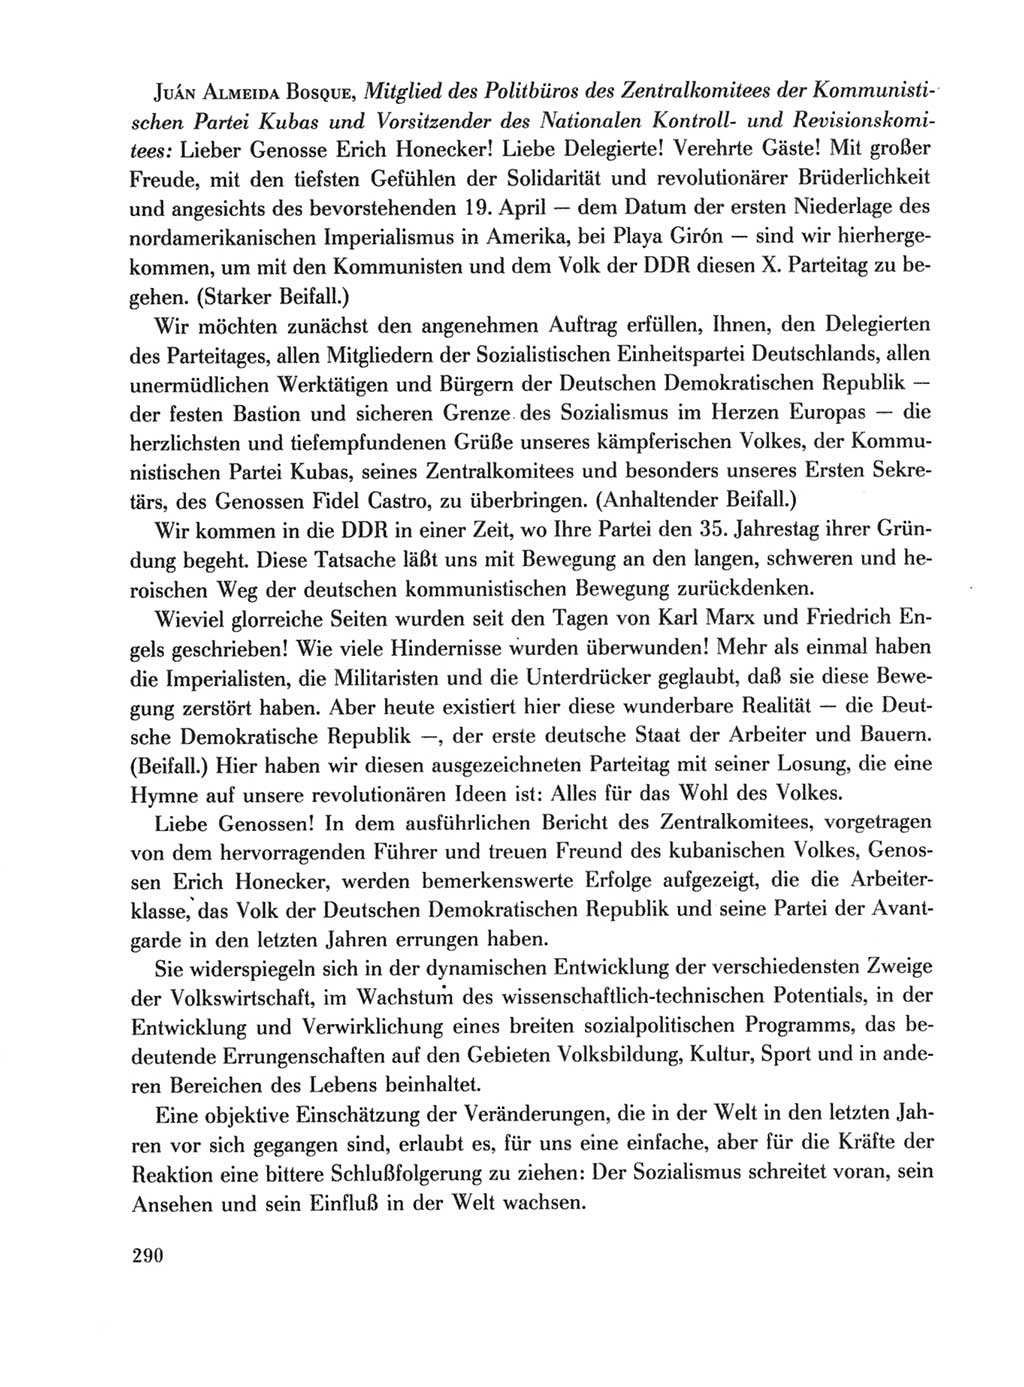 Protokoll der Verhandlungen des Ⅹ. Parteitages der Sozialistischen Einheitspartei Deutschlands (SED) [Deutsche Demokratische Republik (DDR)] 1981, Band 1, Seite 290 (Prot. Verh. Ⅹ. PT SED DDR 1981, Bd. 1, S. 290)